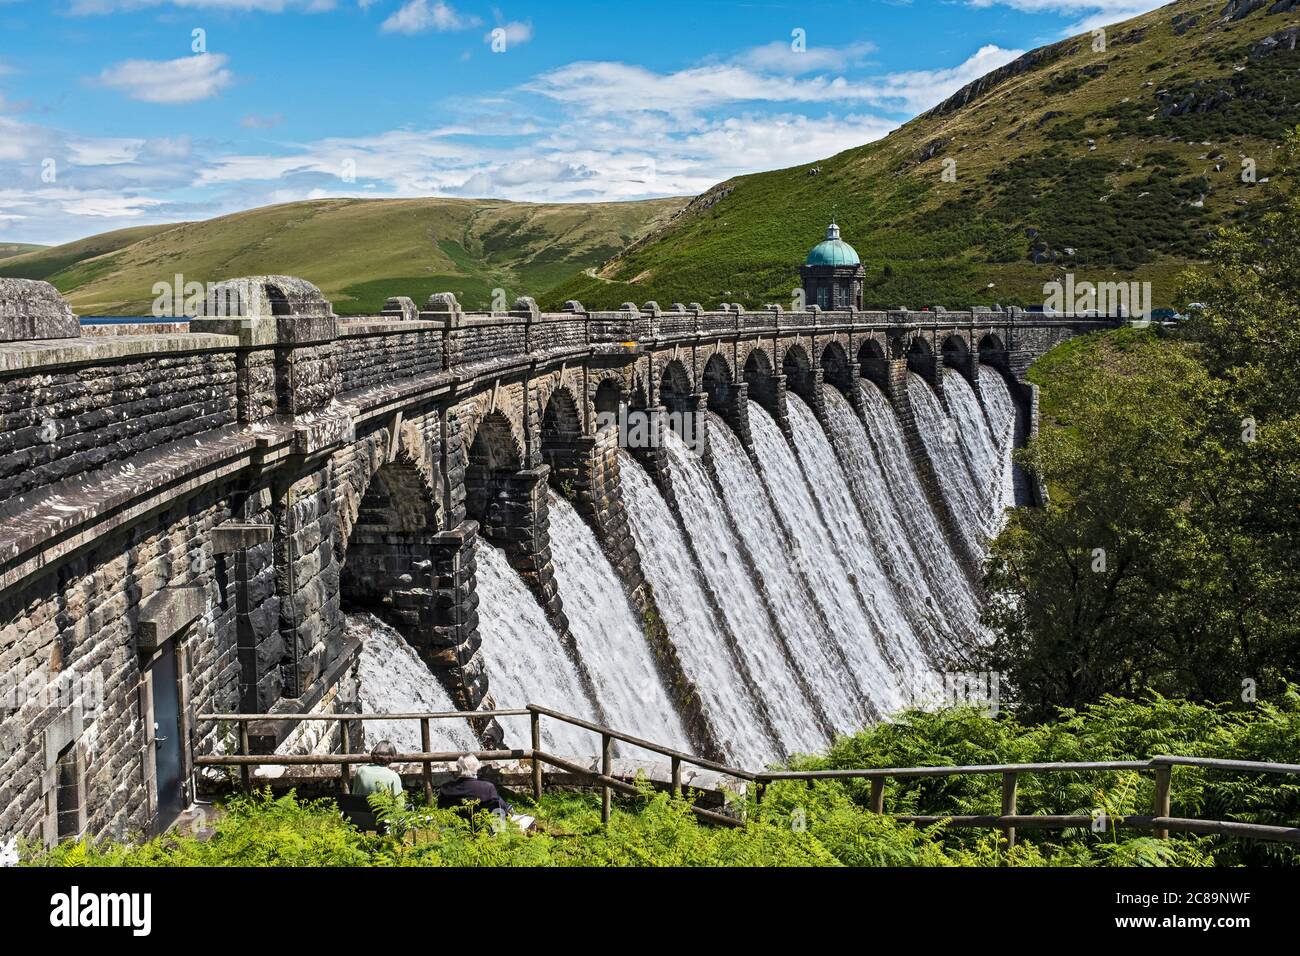 Elan Valley Dams, Powys, Wales, UK Stock Photo